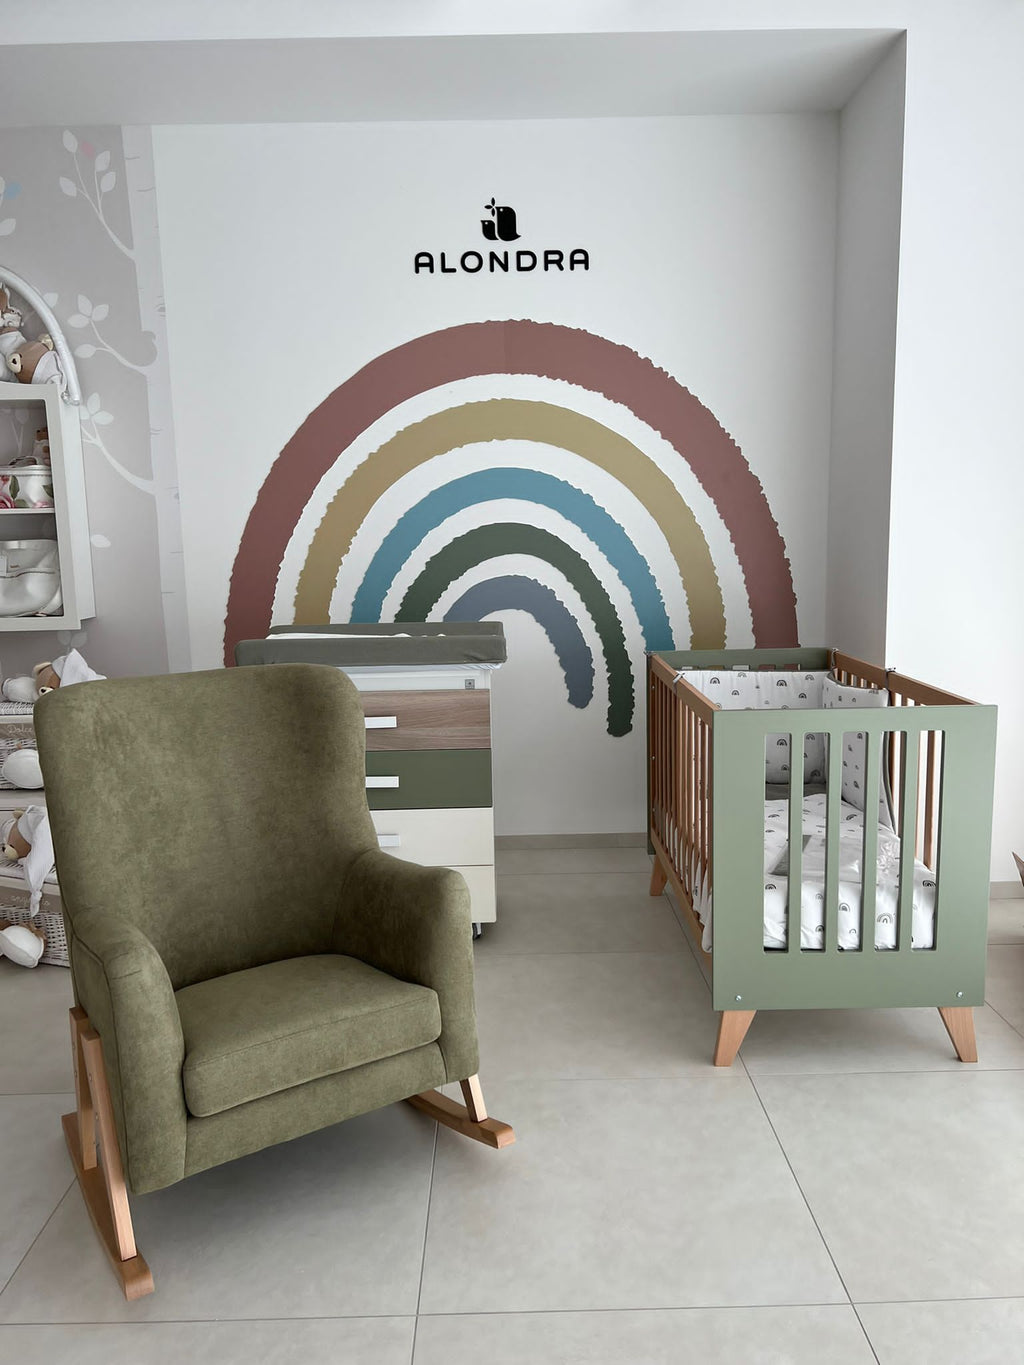 Exposición cuna y sillón de Alondra en L'arcobaleno